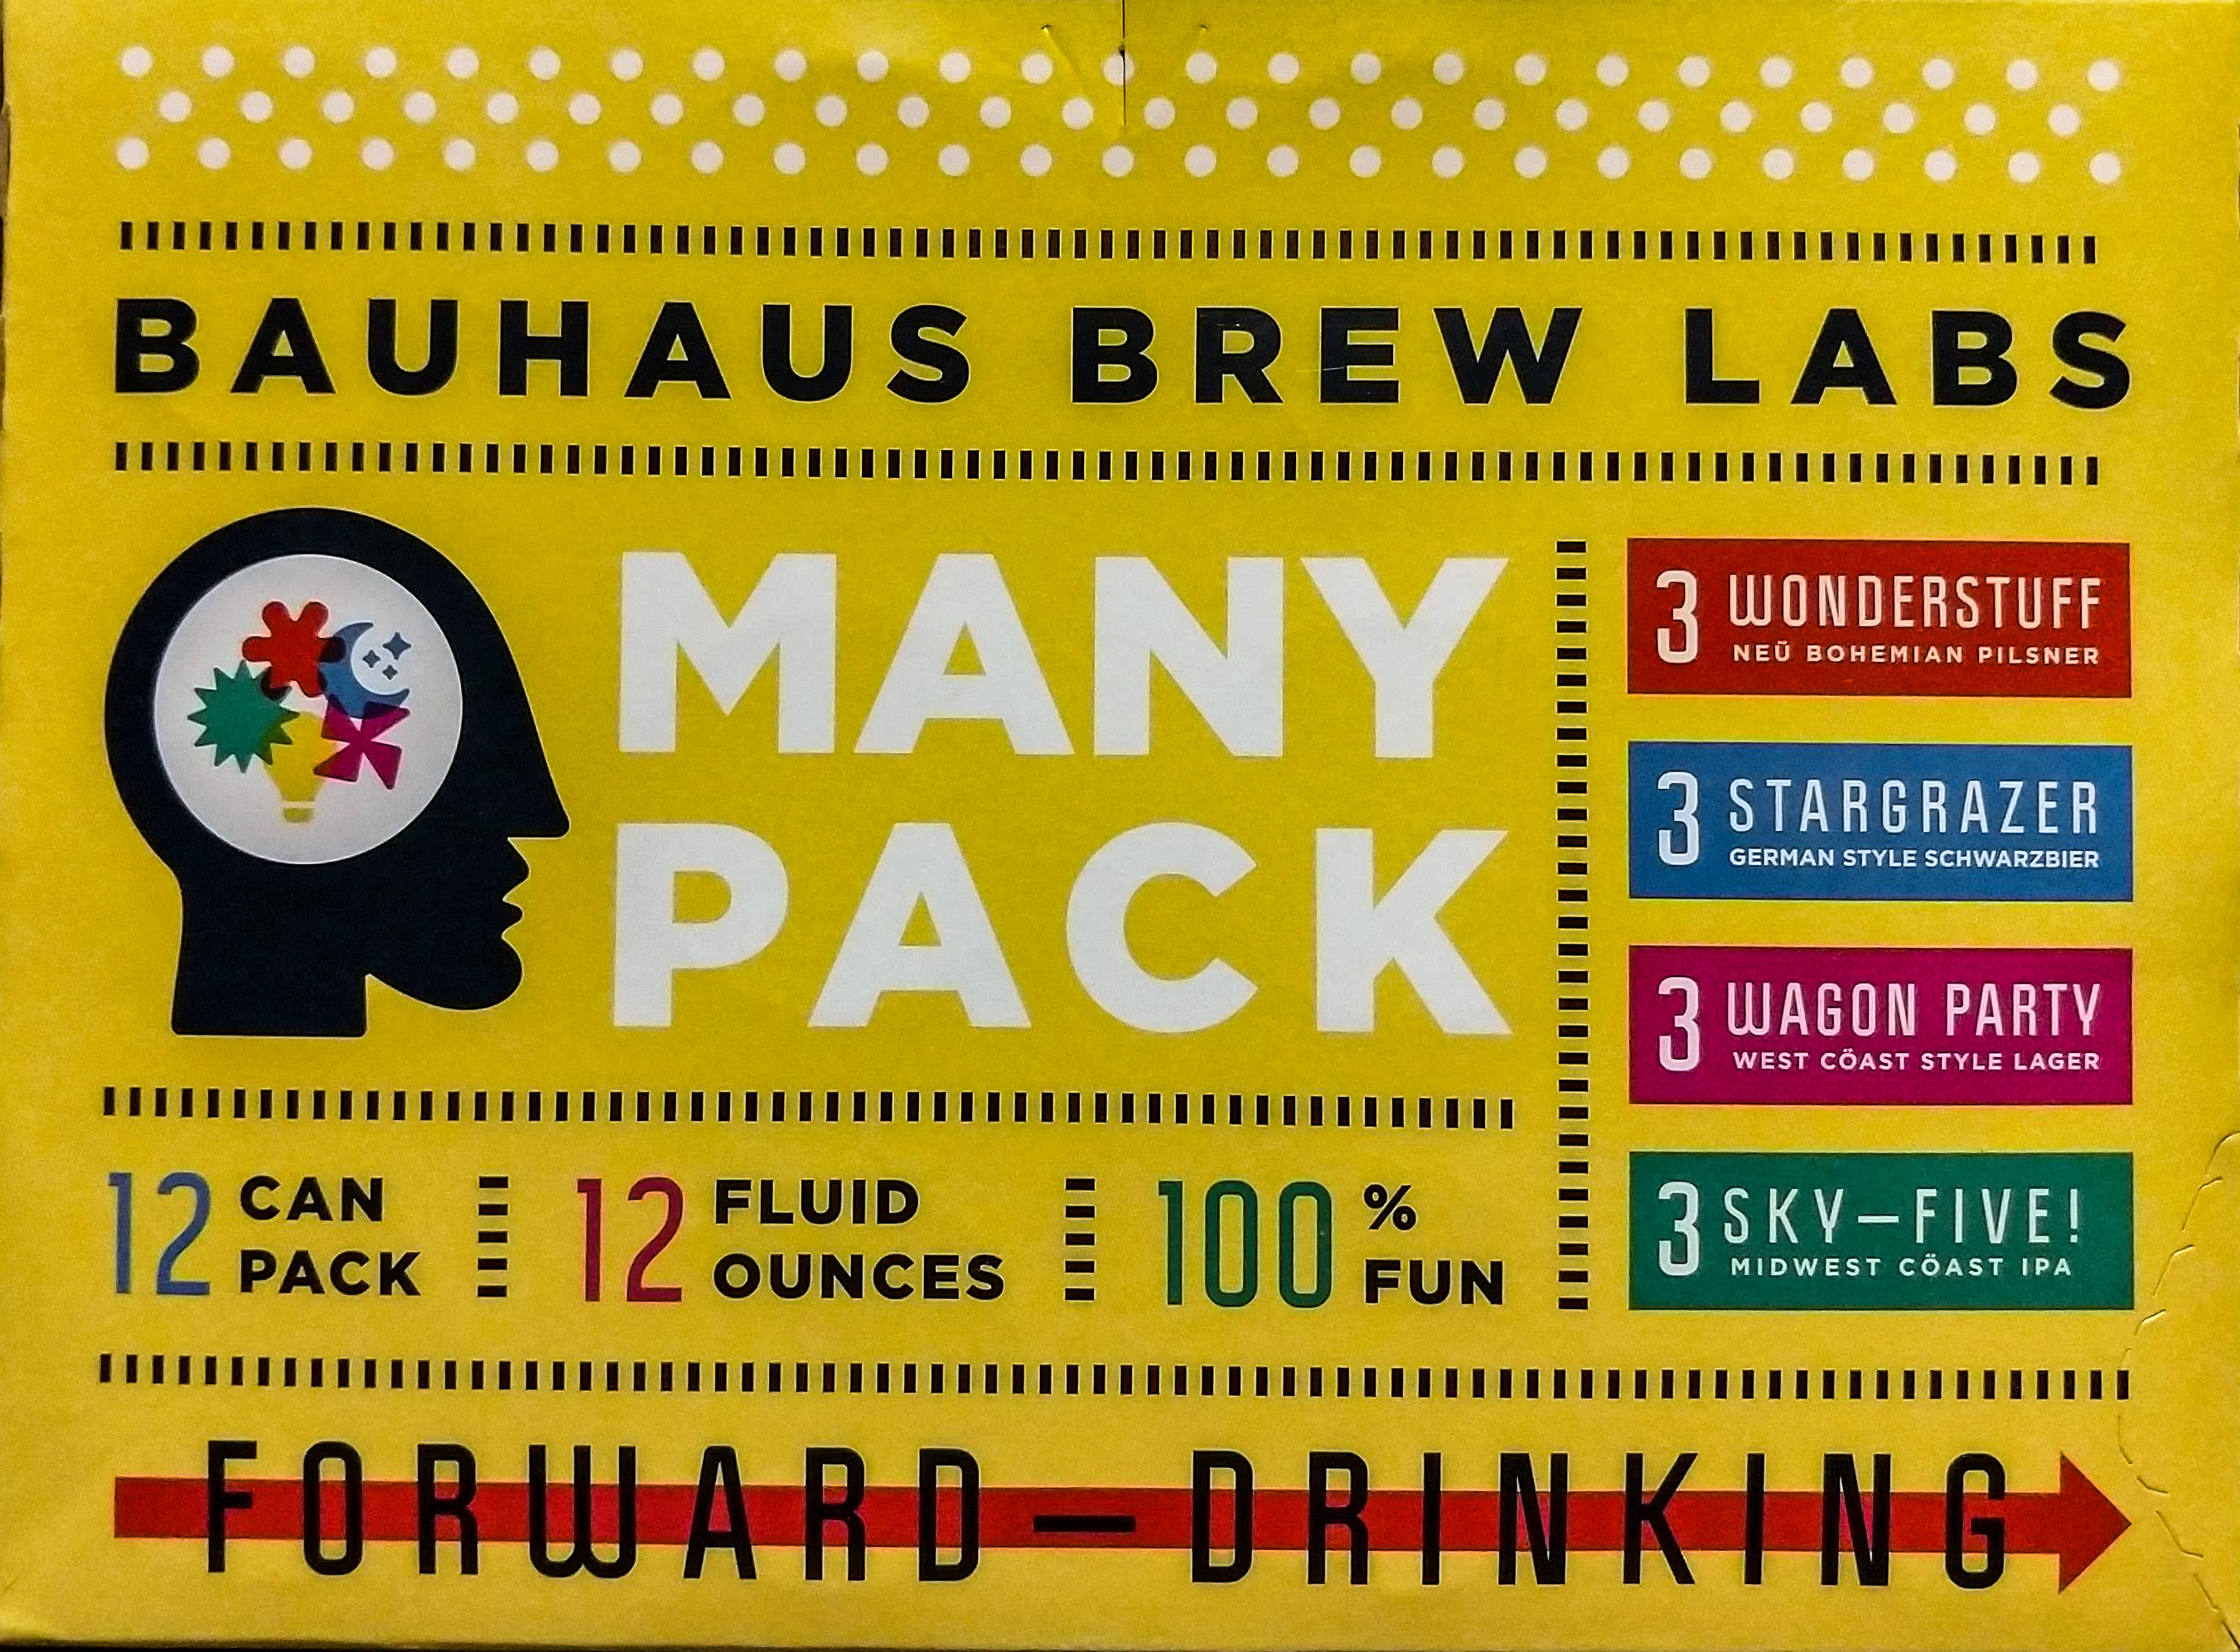 Bauhaus brew labs